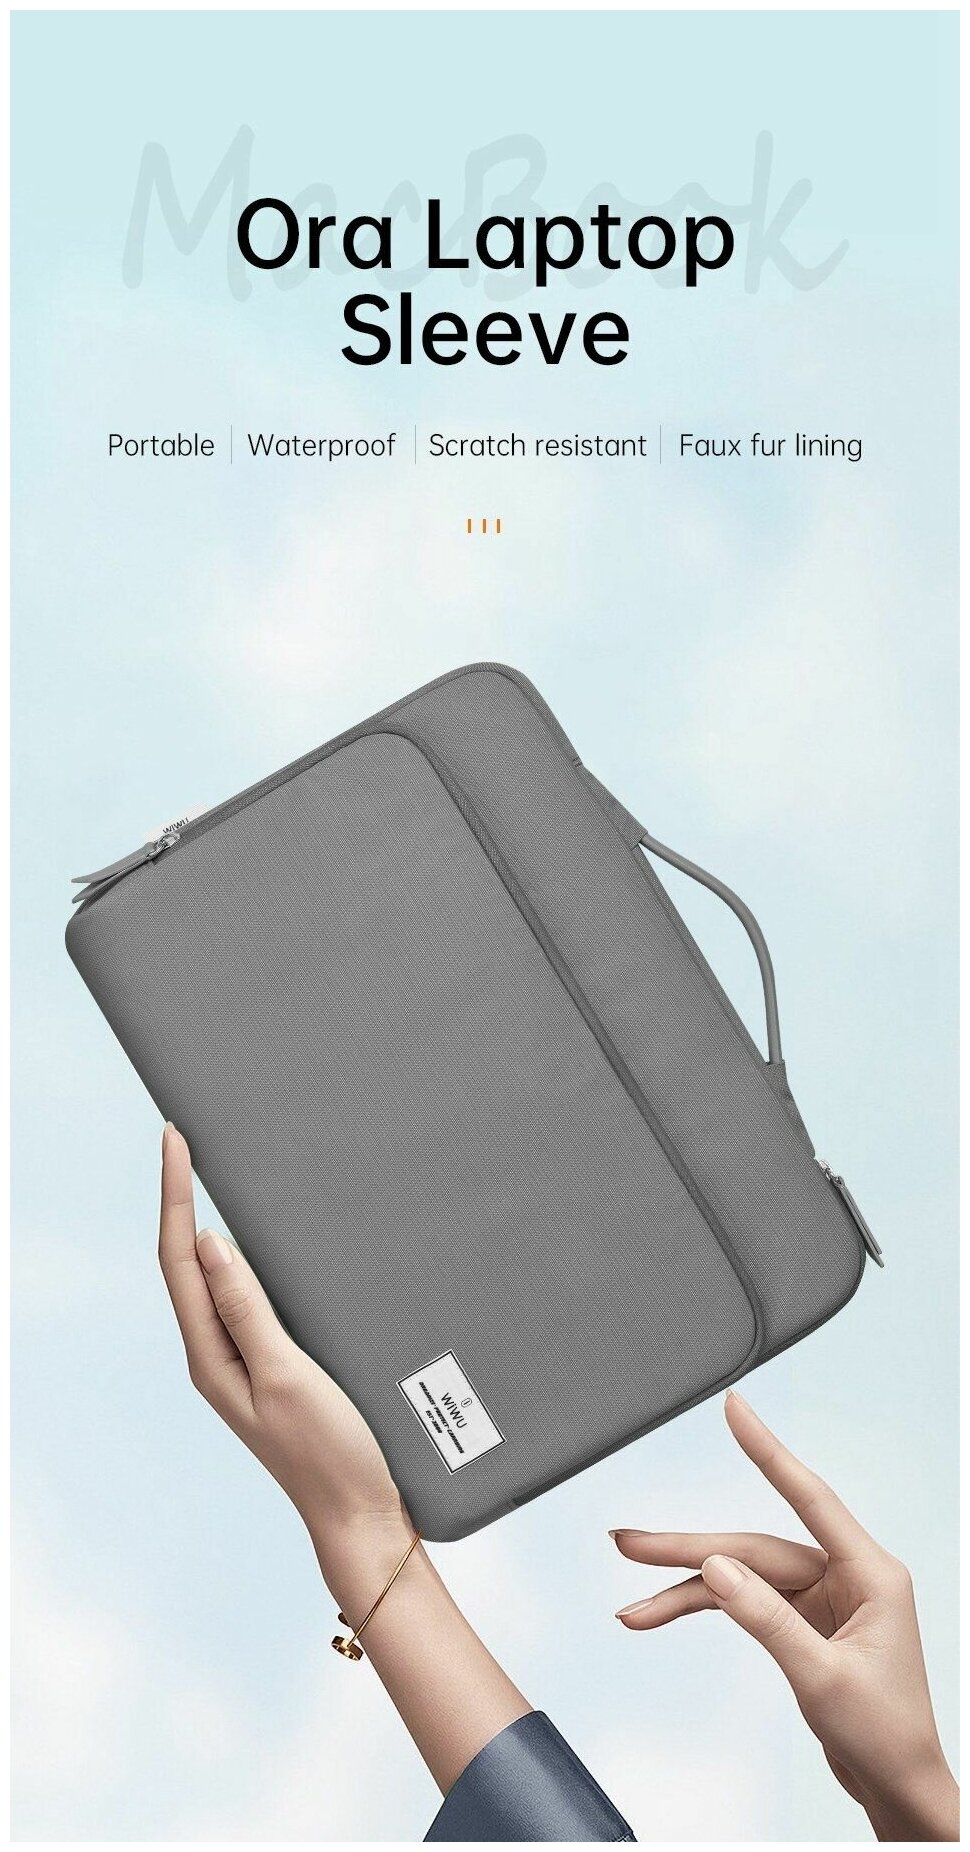 Сумка для ноутбука до 14,2 дюйма мужская, женская WiWU Ora Laptop Sleeve ручная, водонепроницаемая для макбук (Macbook) - Серая